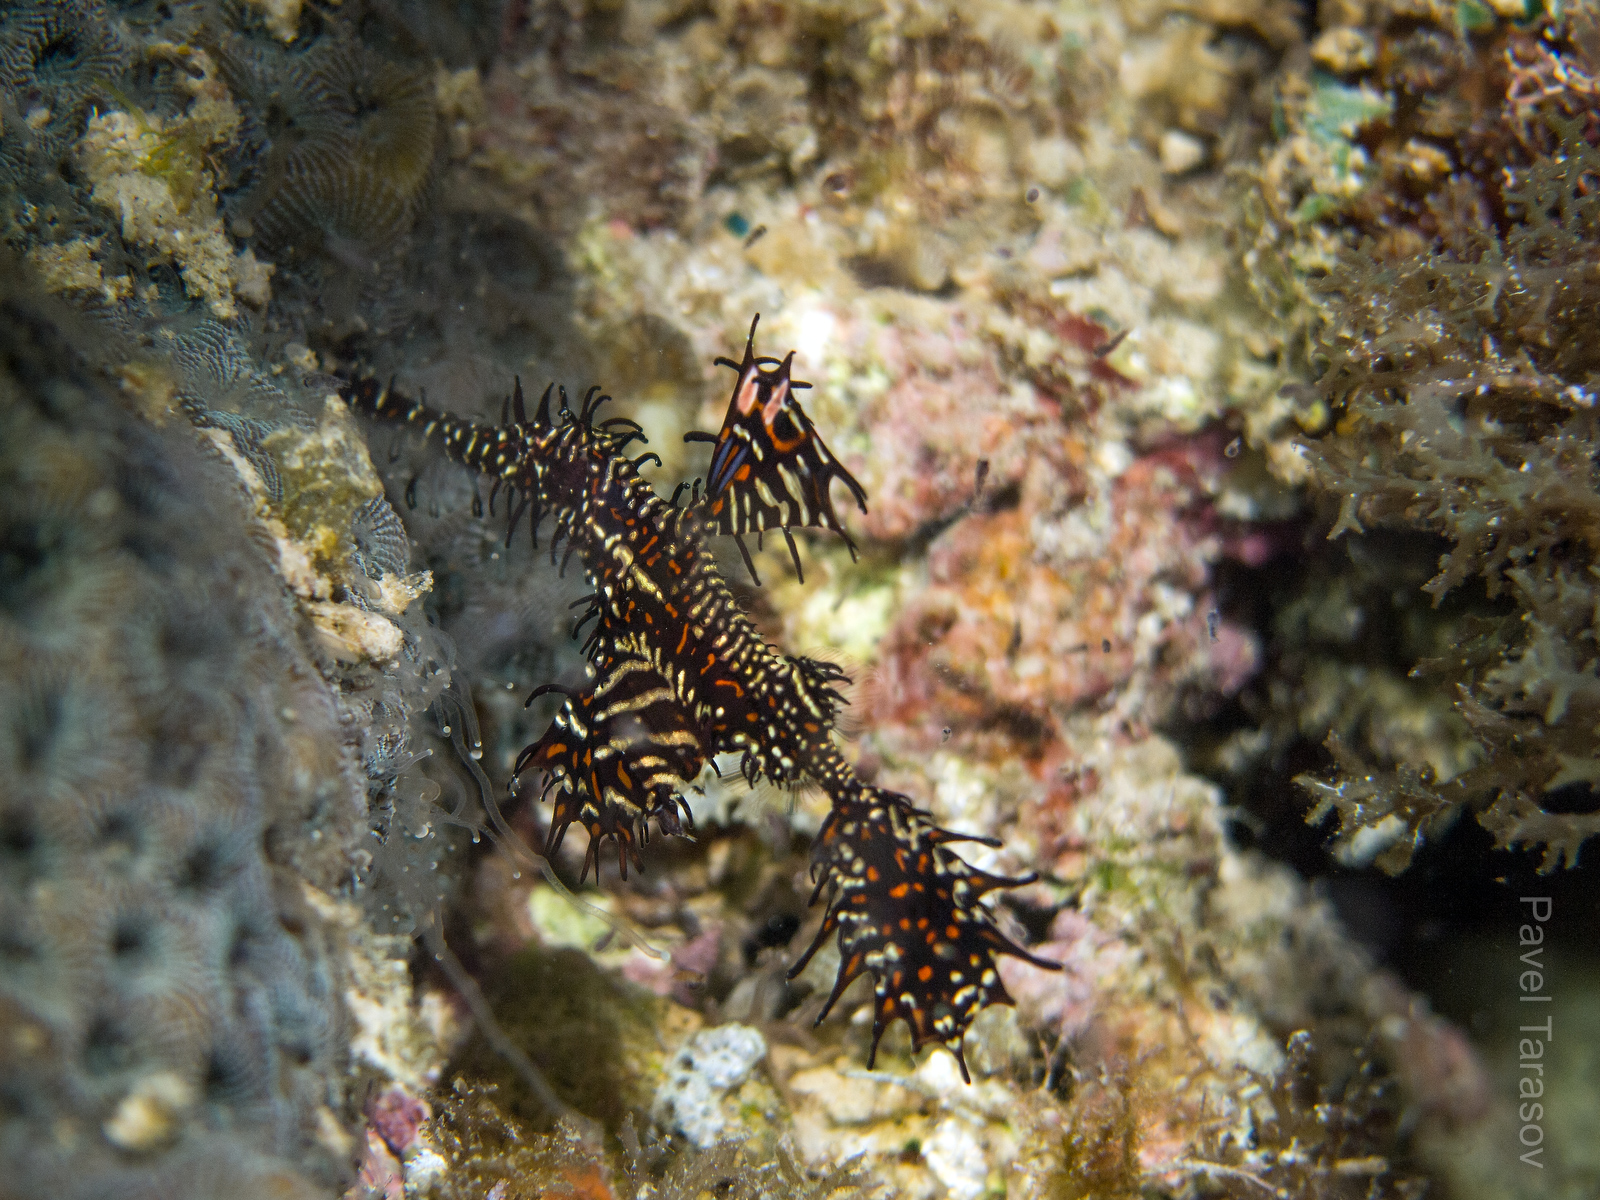 Когда гост пайа заплывает в черные кораллы (а обычно он там и плавает) его почти не видно